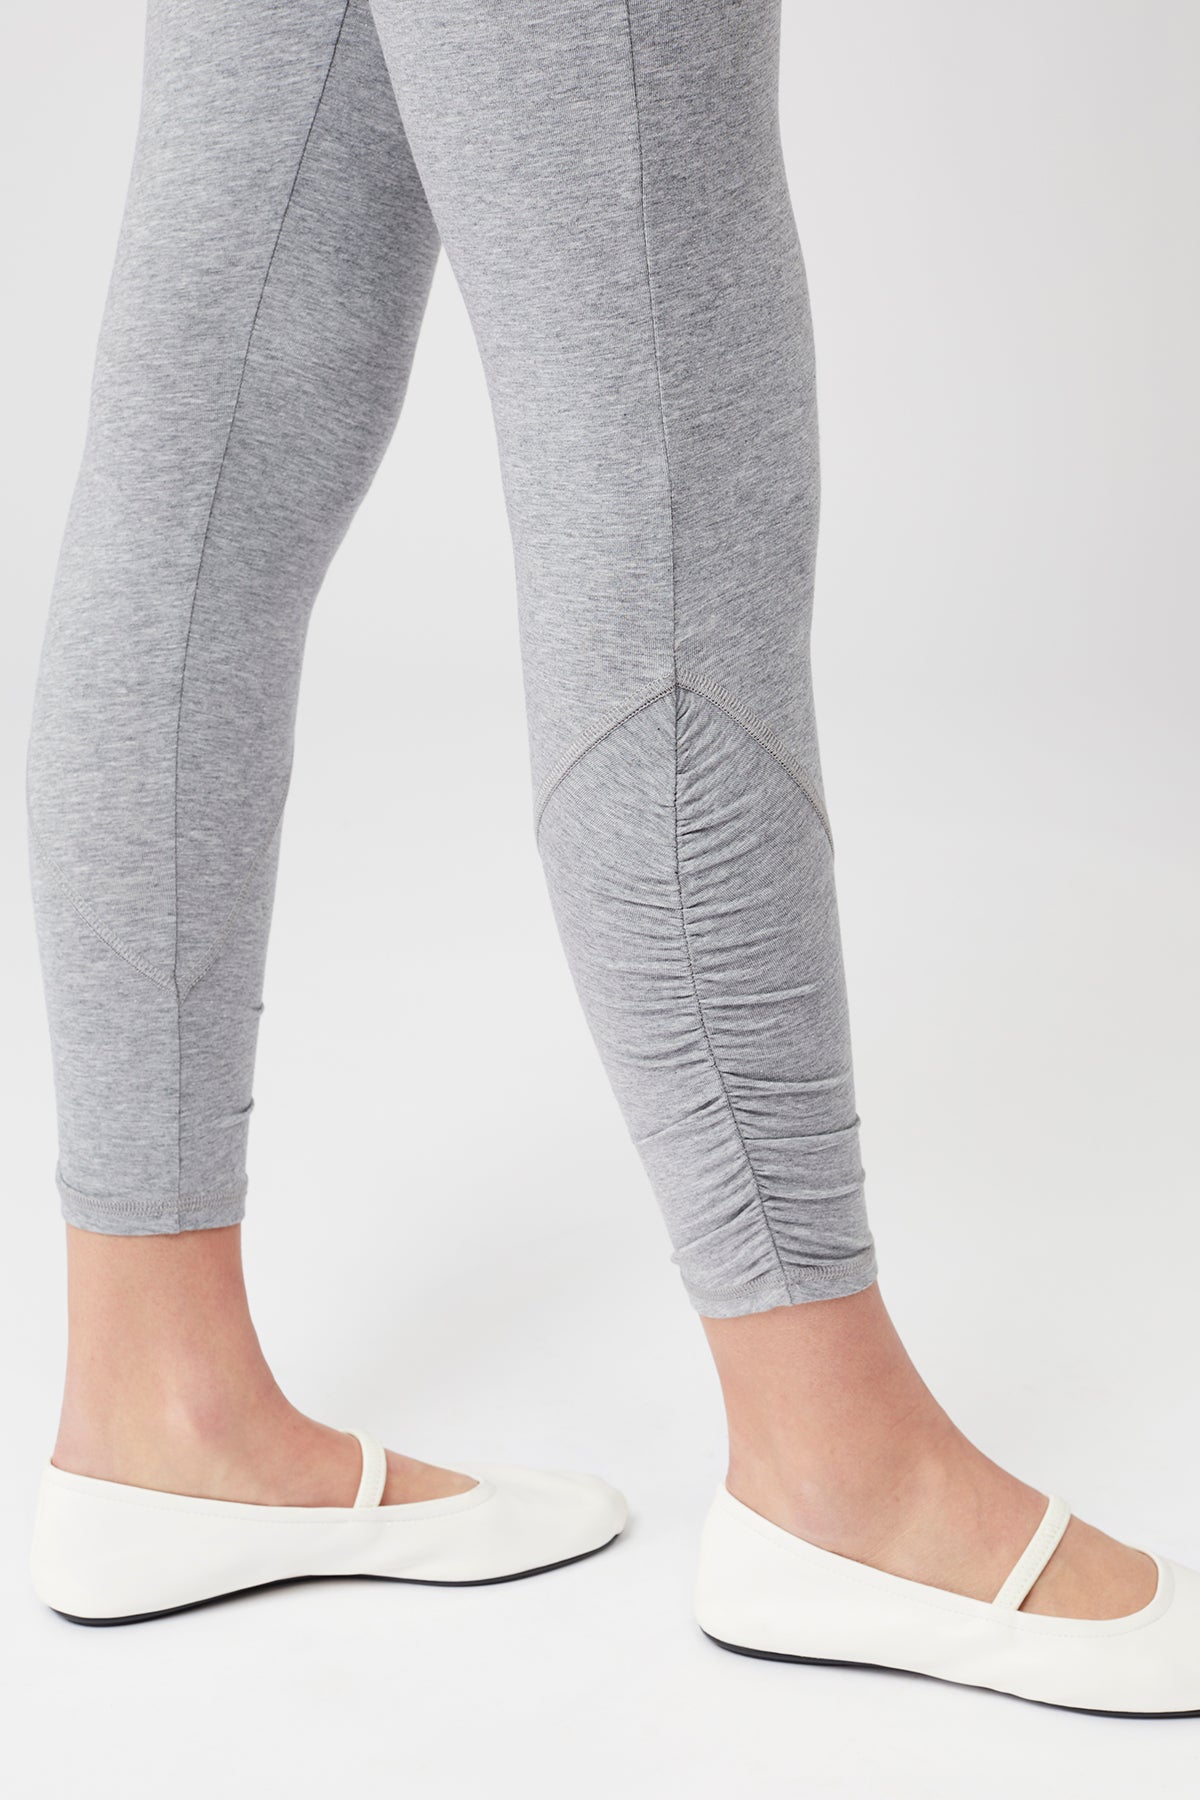 Mandala Yoga Legging Grau Detail - Cropped Ruffle Tight